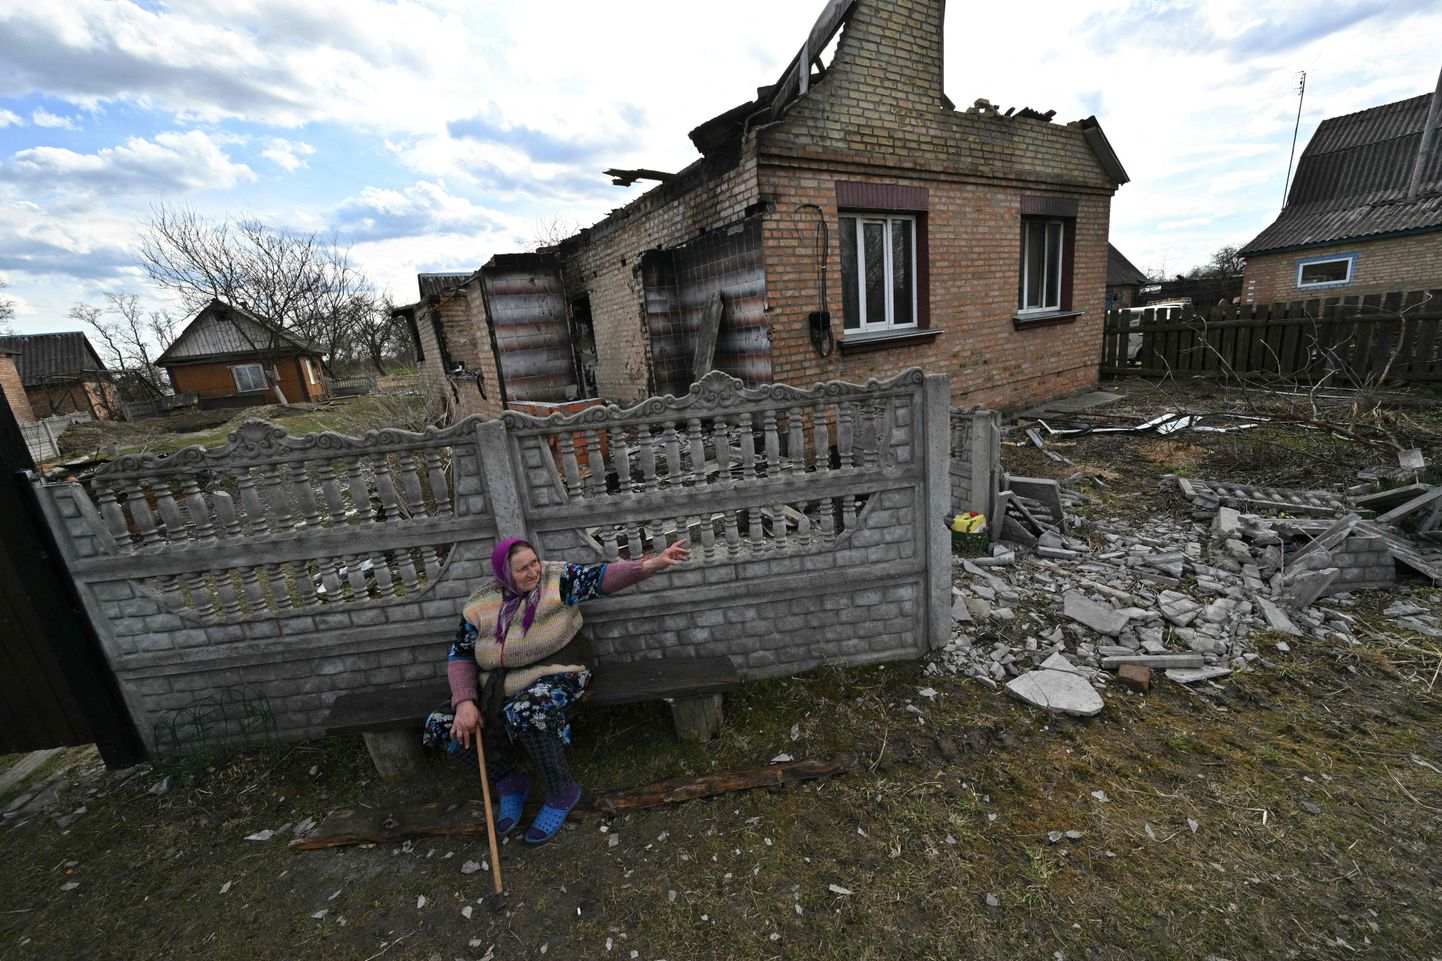 Külanaine 7. aprillil 2022 Ukraina põhjaosas Obuhhovõtšis hävitatud maja ees istumas ja olukorda kirjeldamas.